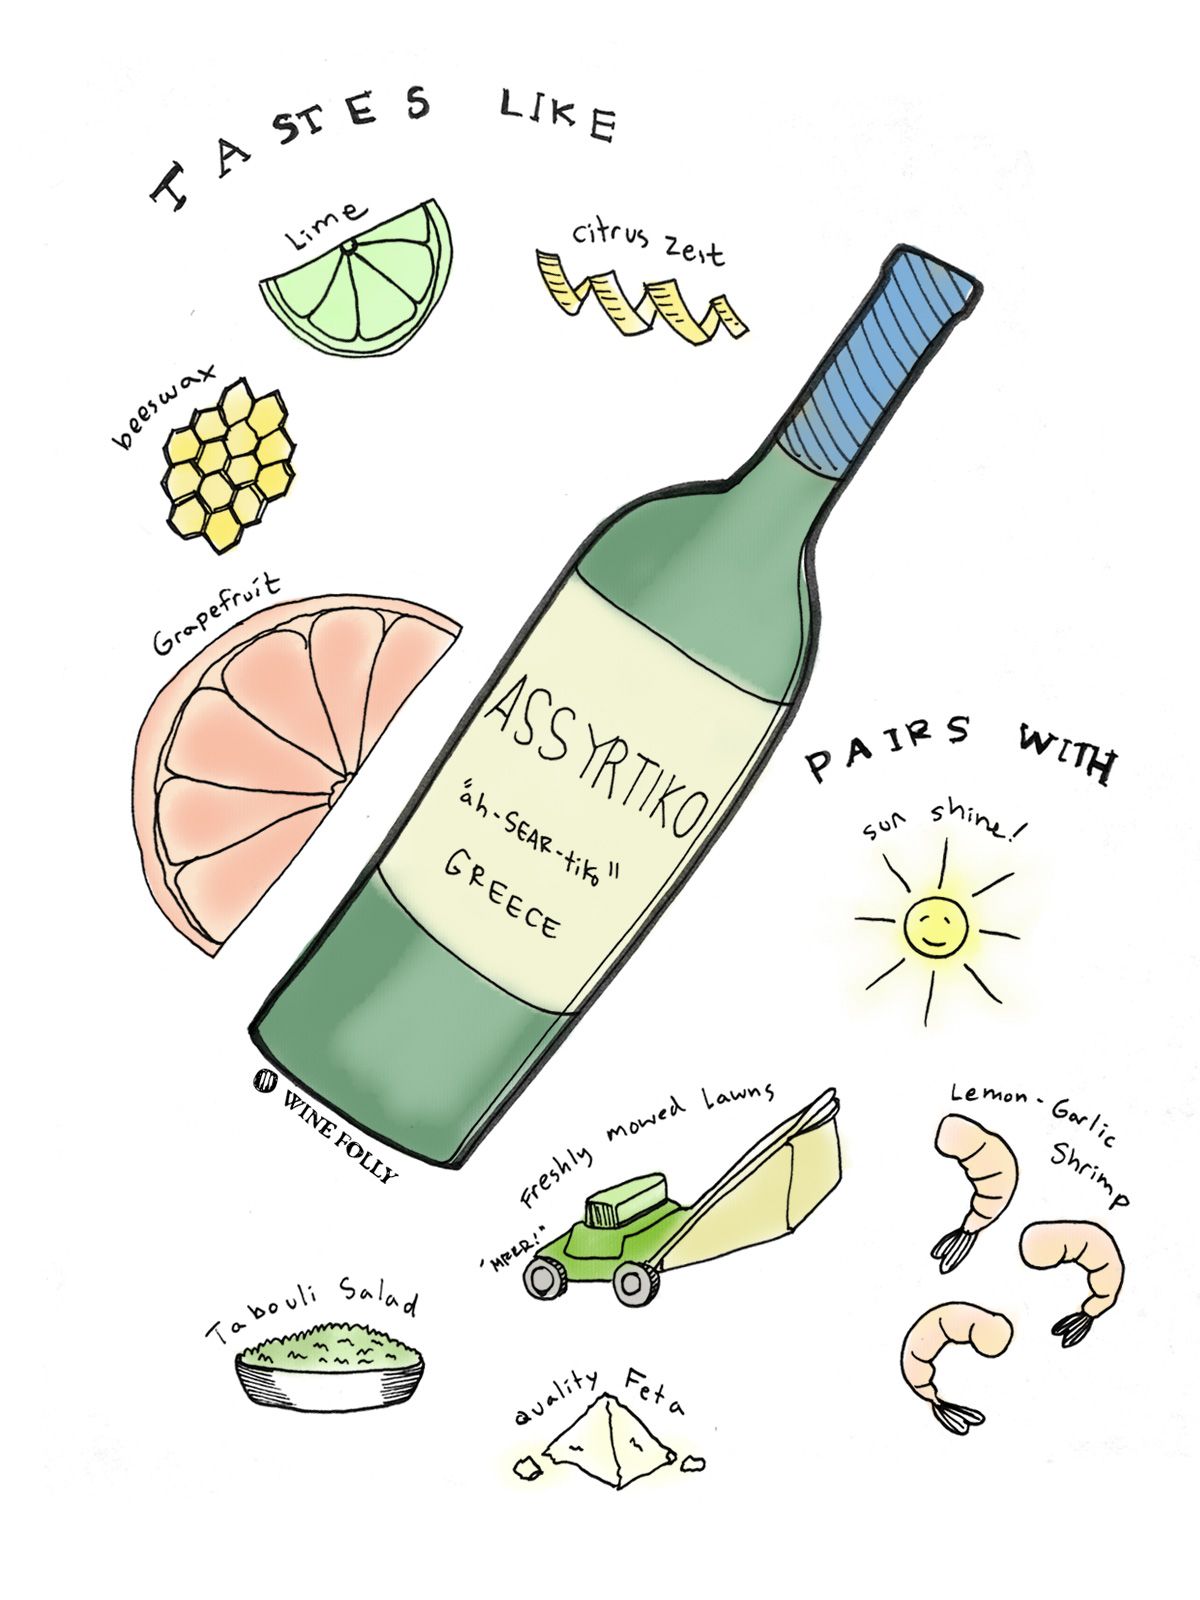 Profilo di gusto del vino bianco Assyrtiko